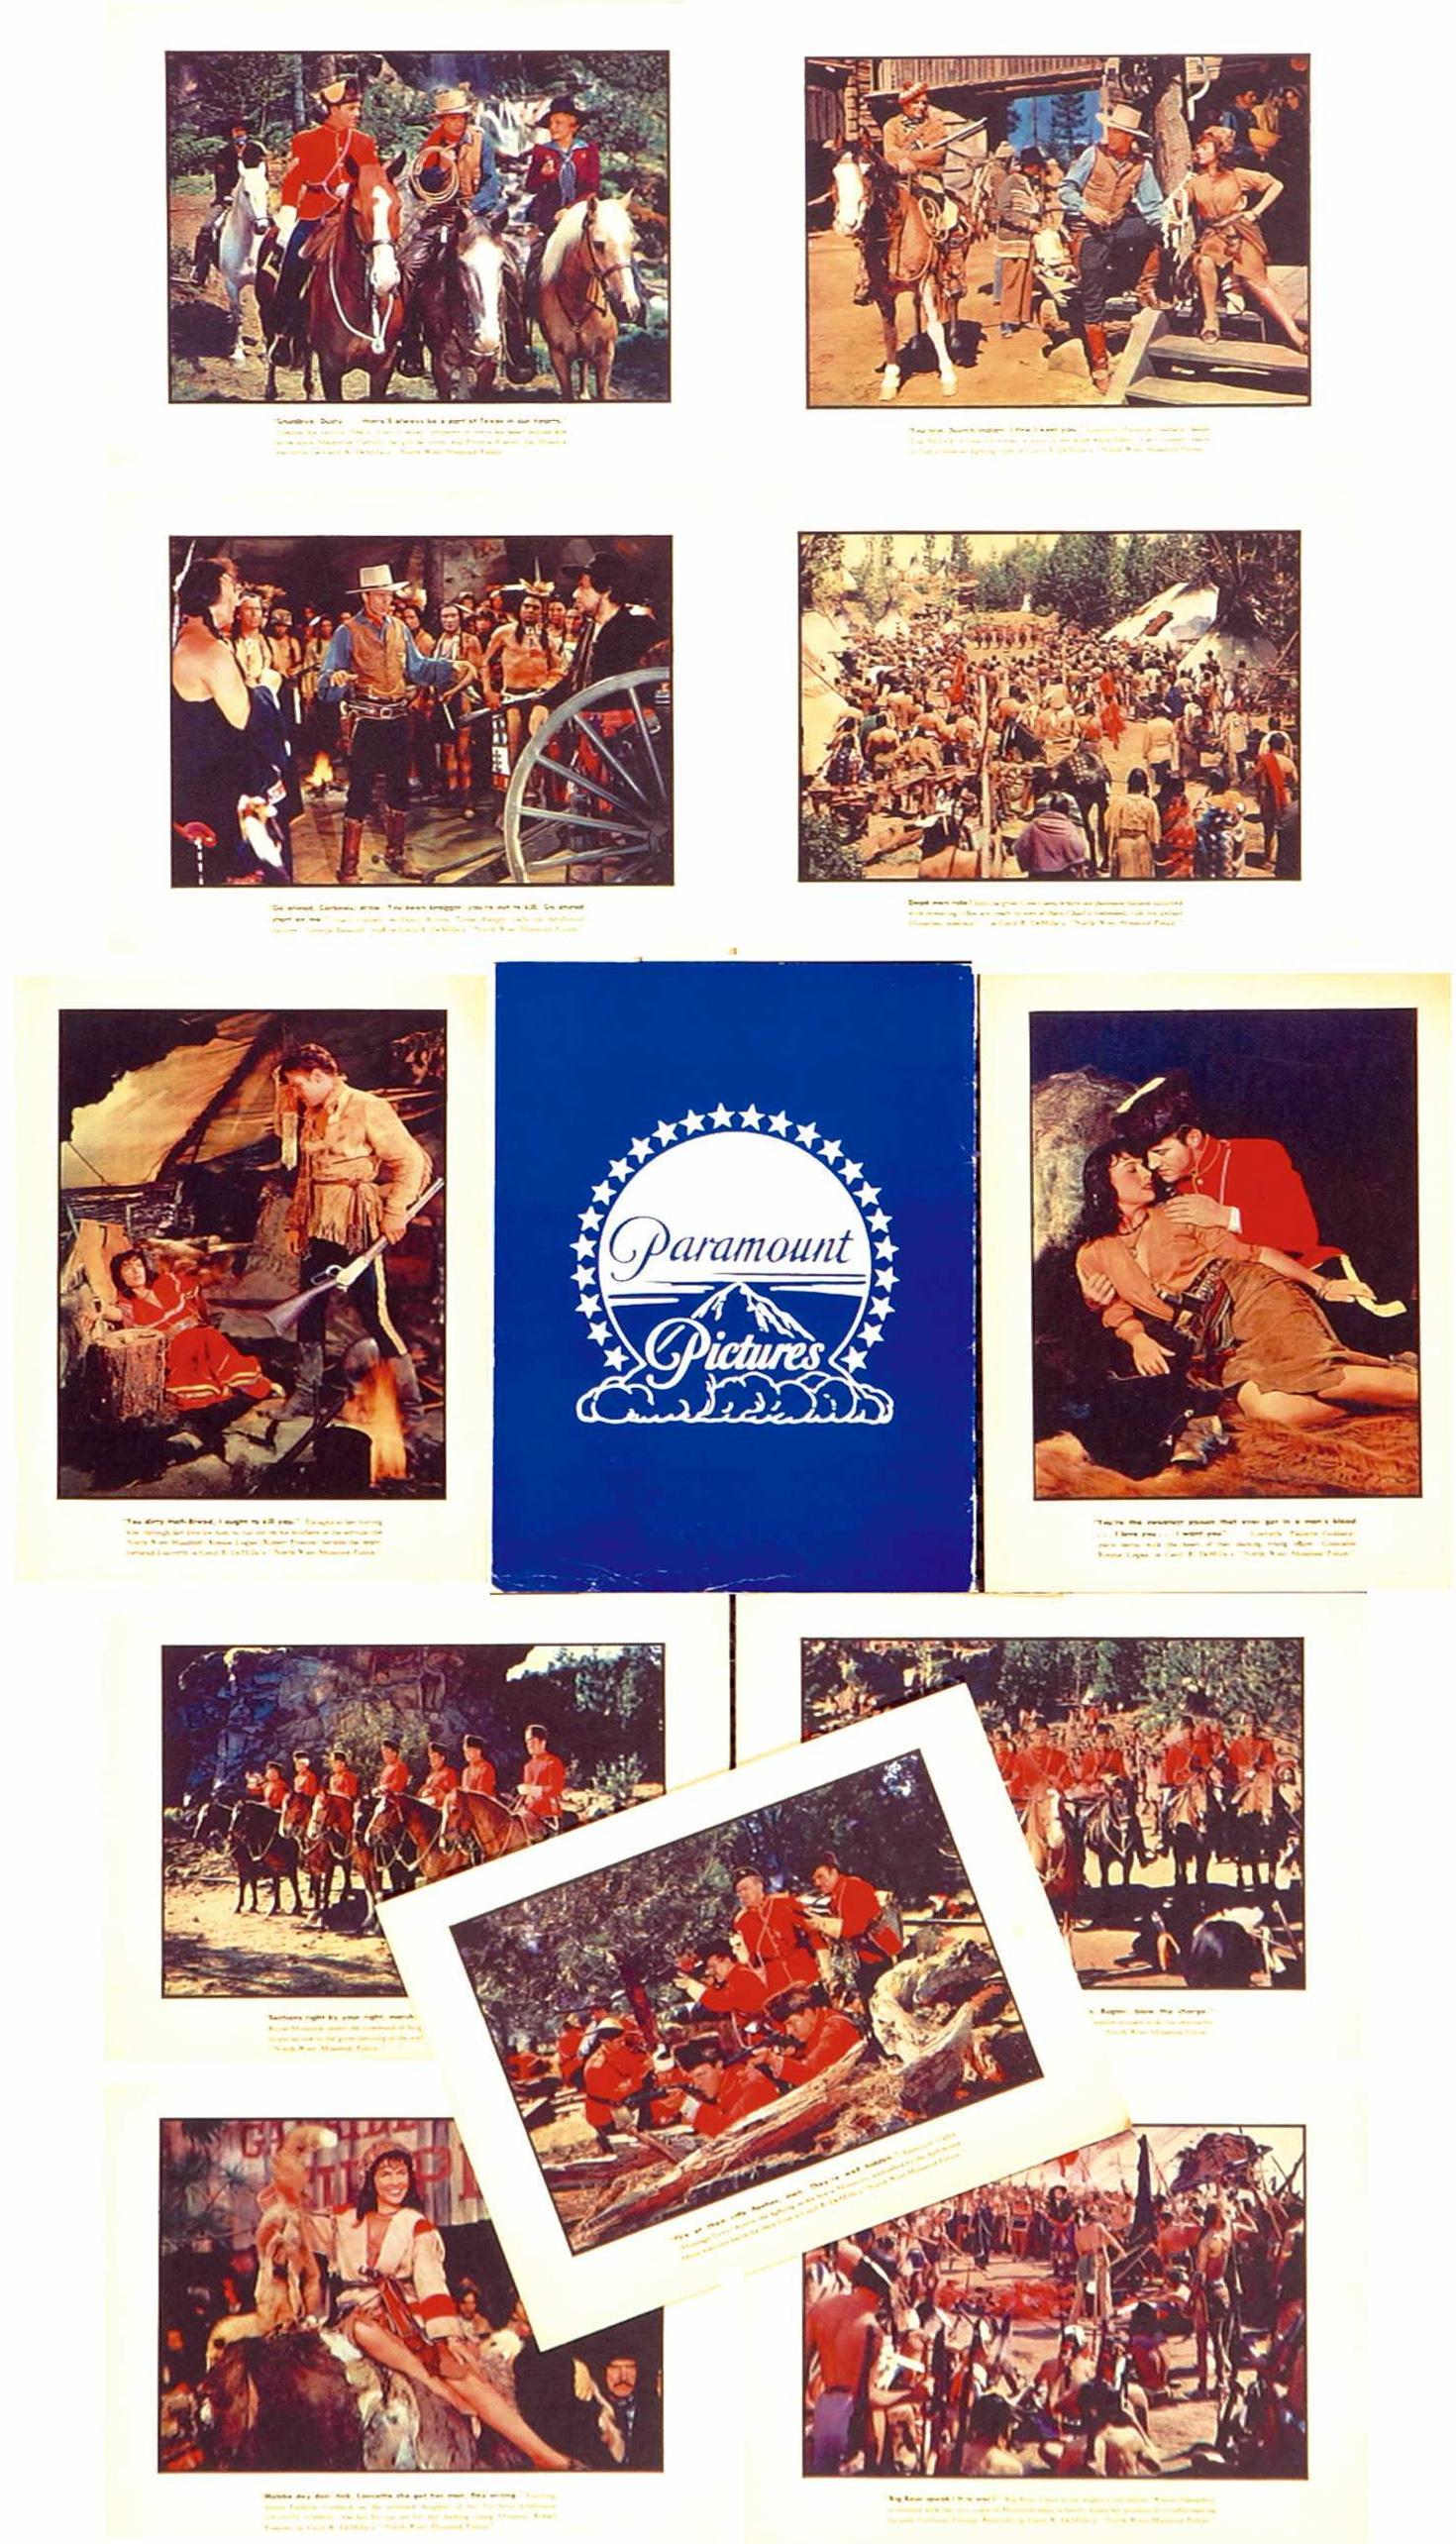 Постер фильма Северо-западная конная полиция | North West Mounted Police